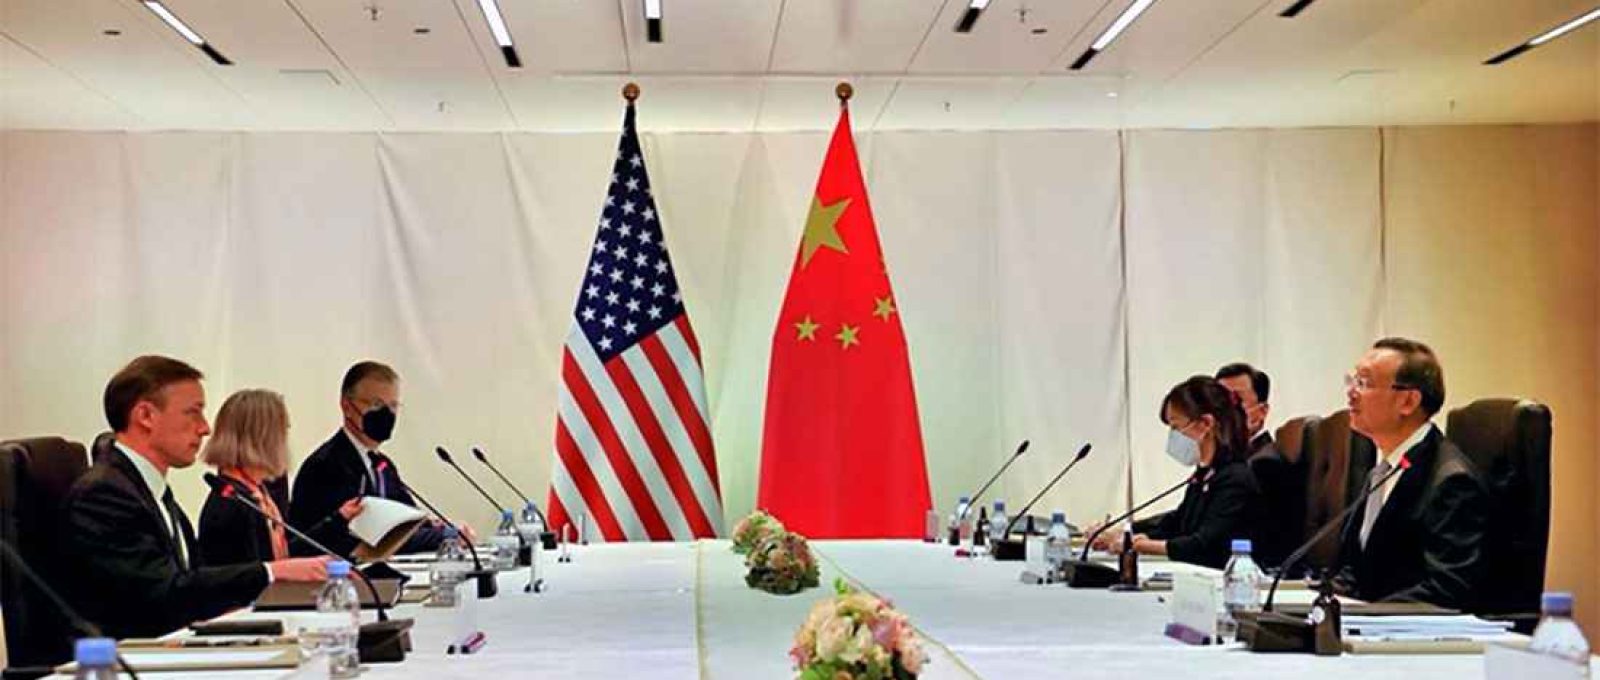 O conselheiro de segurança nacional dos EUA, Jake Sullivan, primeiro à esquerda, em reunião com Yang Jiechi, membro do Birô Político do Comitê Central do Partido Comunista da China, primeiro à direita (Xinhua).